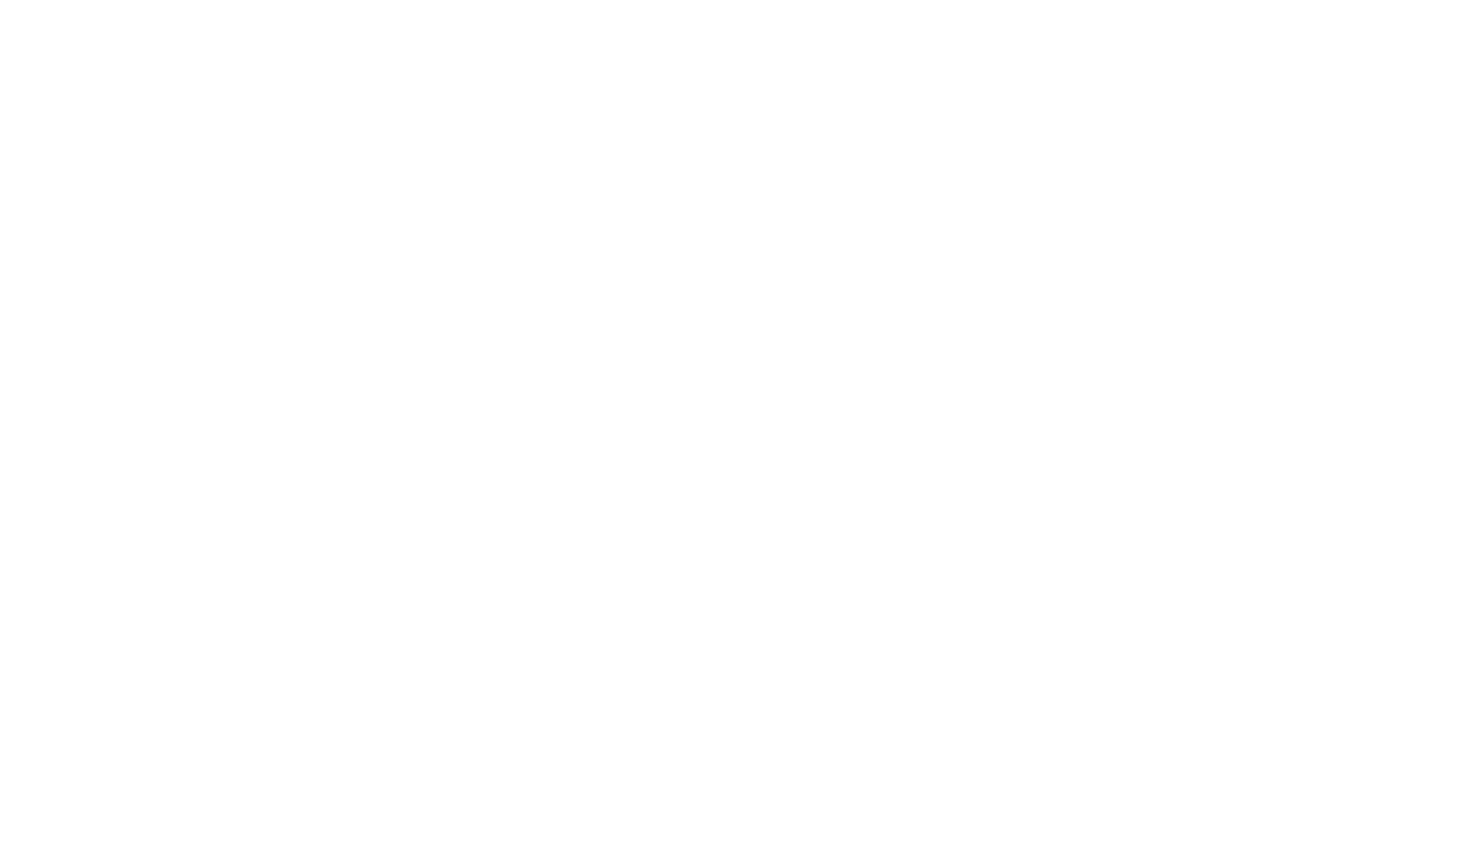 Hotel Sol Cataratas